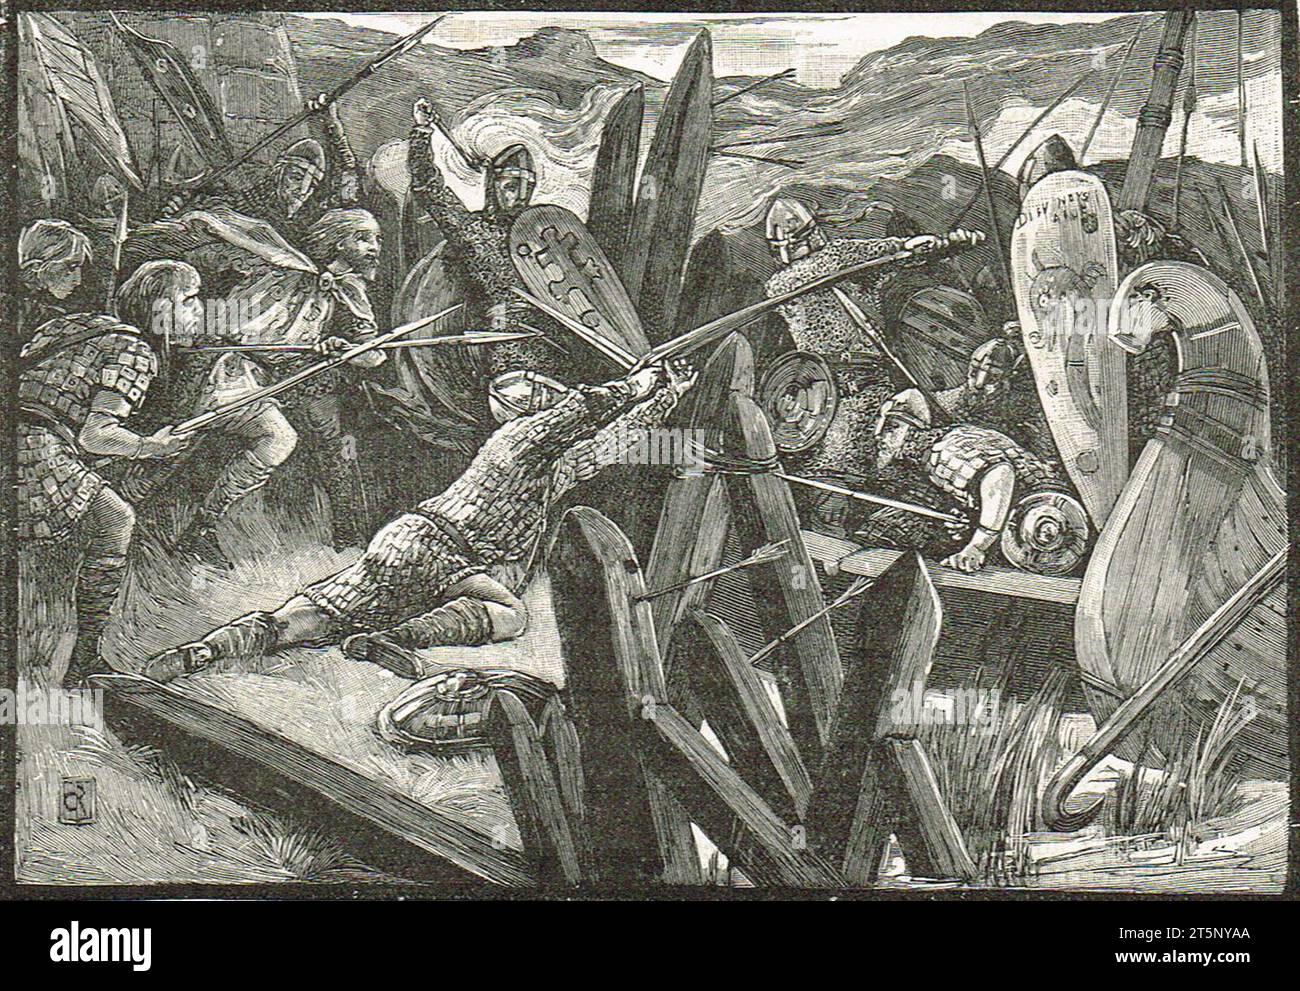 Capture du camp de refuge sur l'île d'Ely vers 1071. La base de la rébellion par Hereward The Wake Banque D'Images